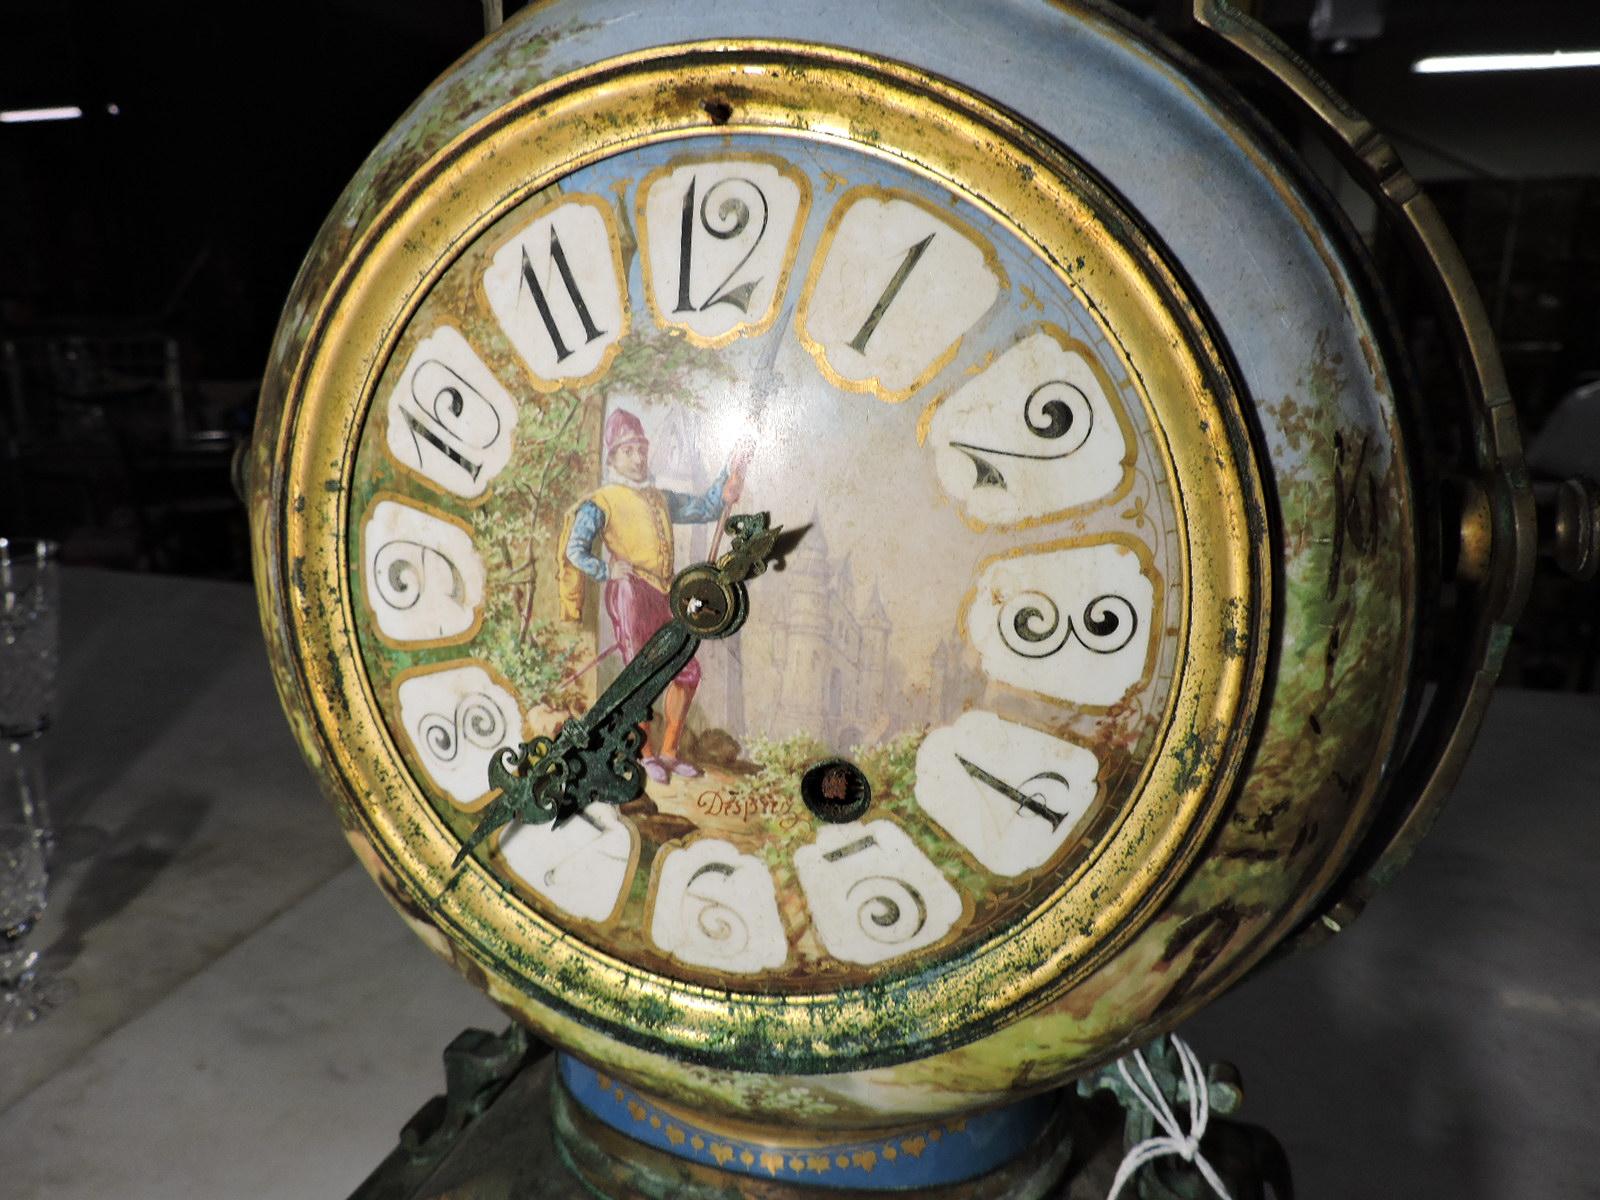 DESPREIZ Antique Mantle Clock - Metal & Hand-Painted Porcelain